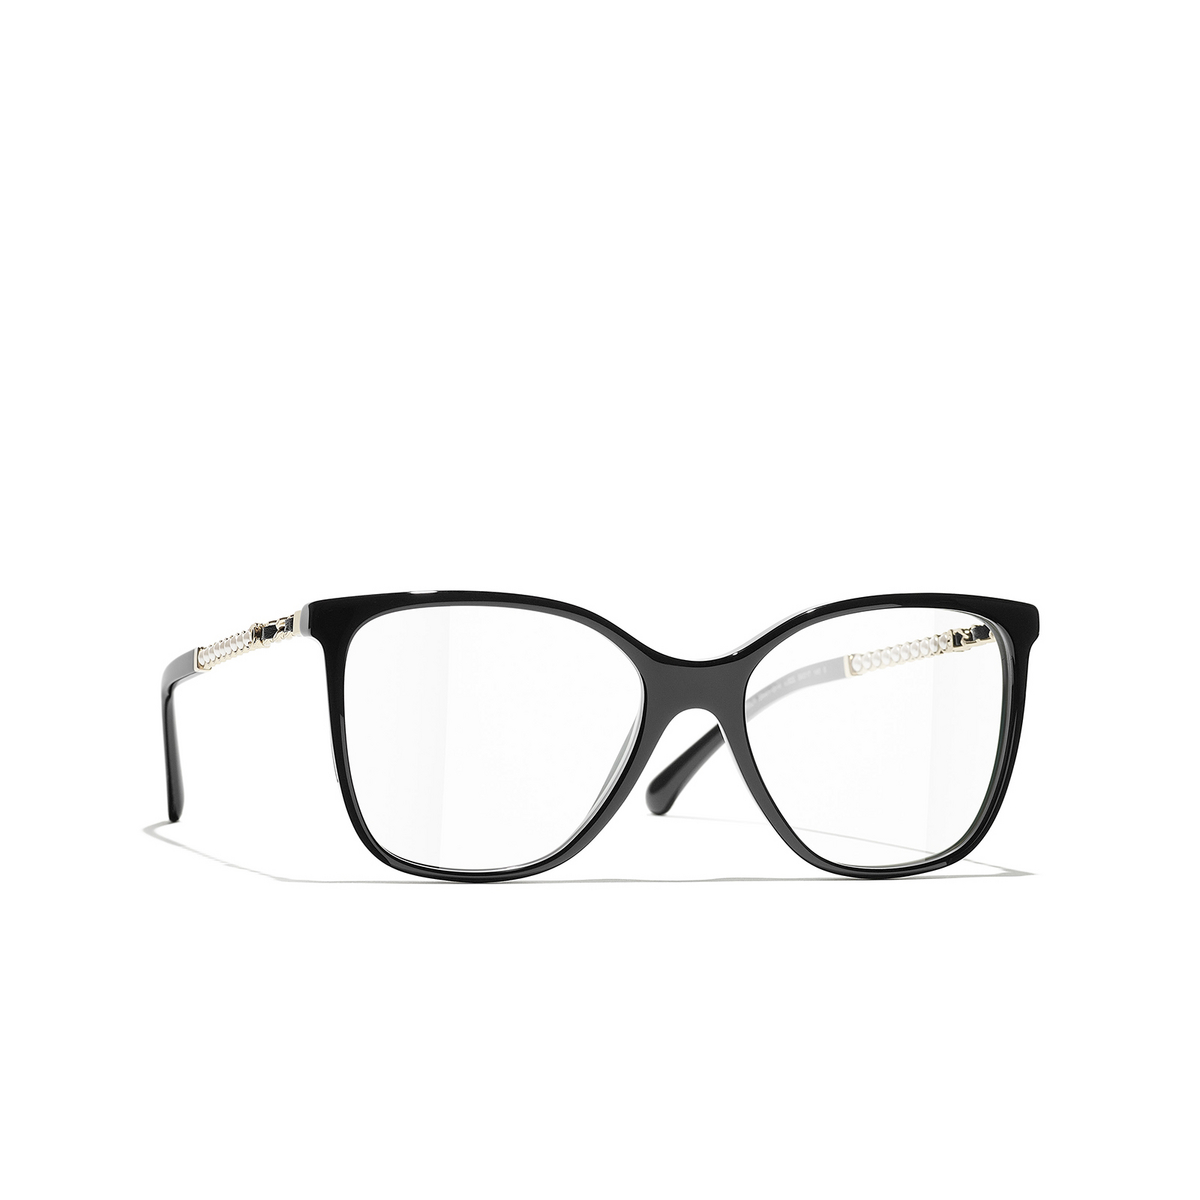 CHANEL square Eyeglasses C622 Black & Gold - three-quarters view